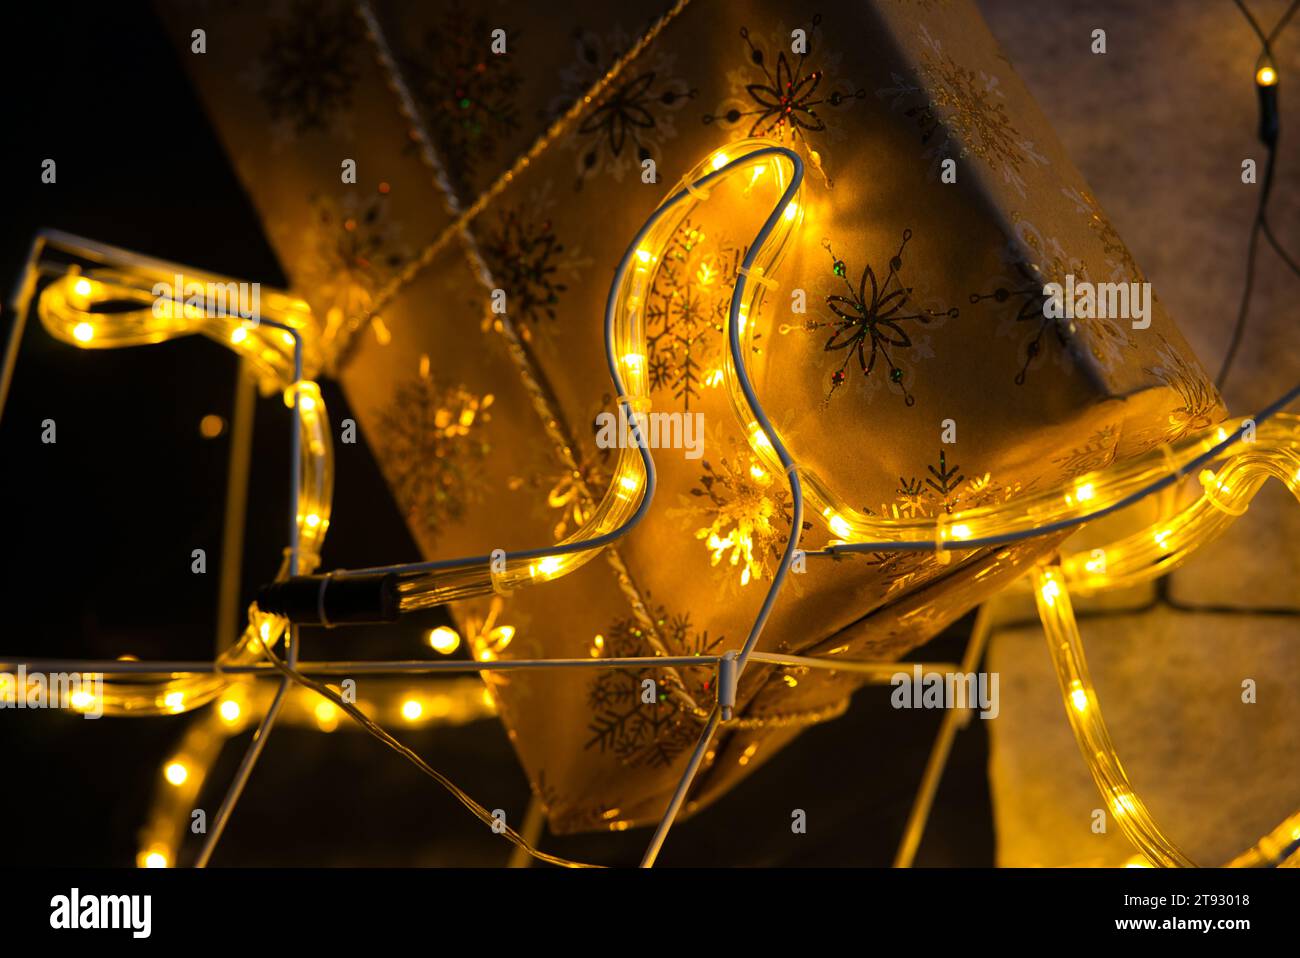 Tuffati nello spirito natalizio con un primo piano di un regalo di Natale avvolto in carta dorata adornata da scintillanti fiocchi di neve. L'angolo inferiore del gif Foto Stock